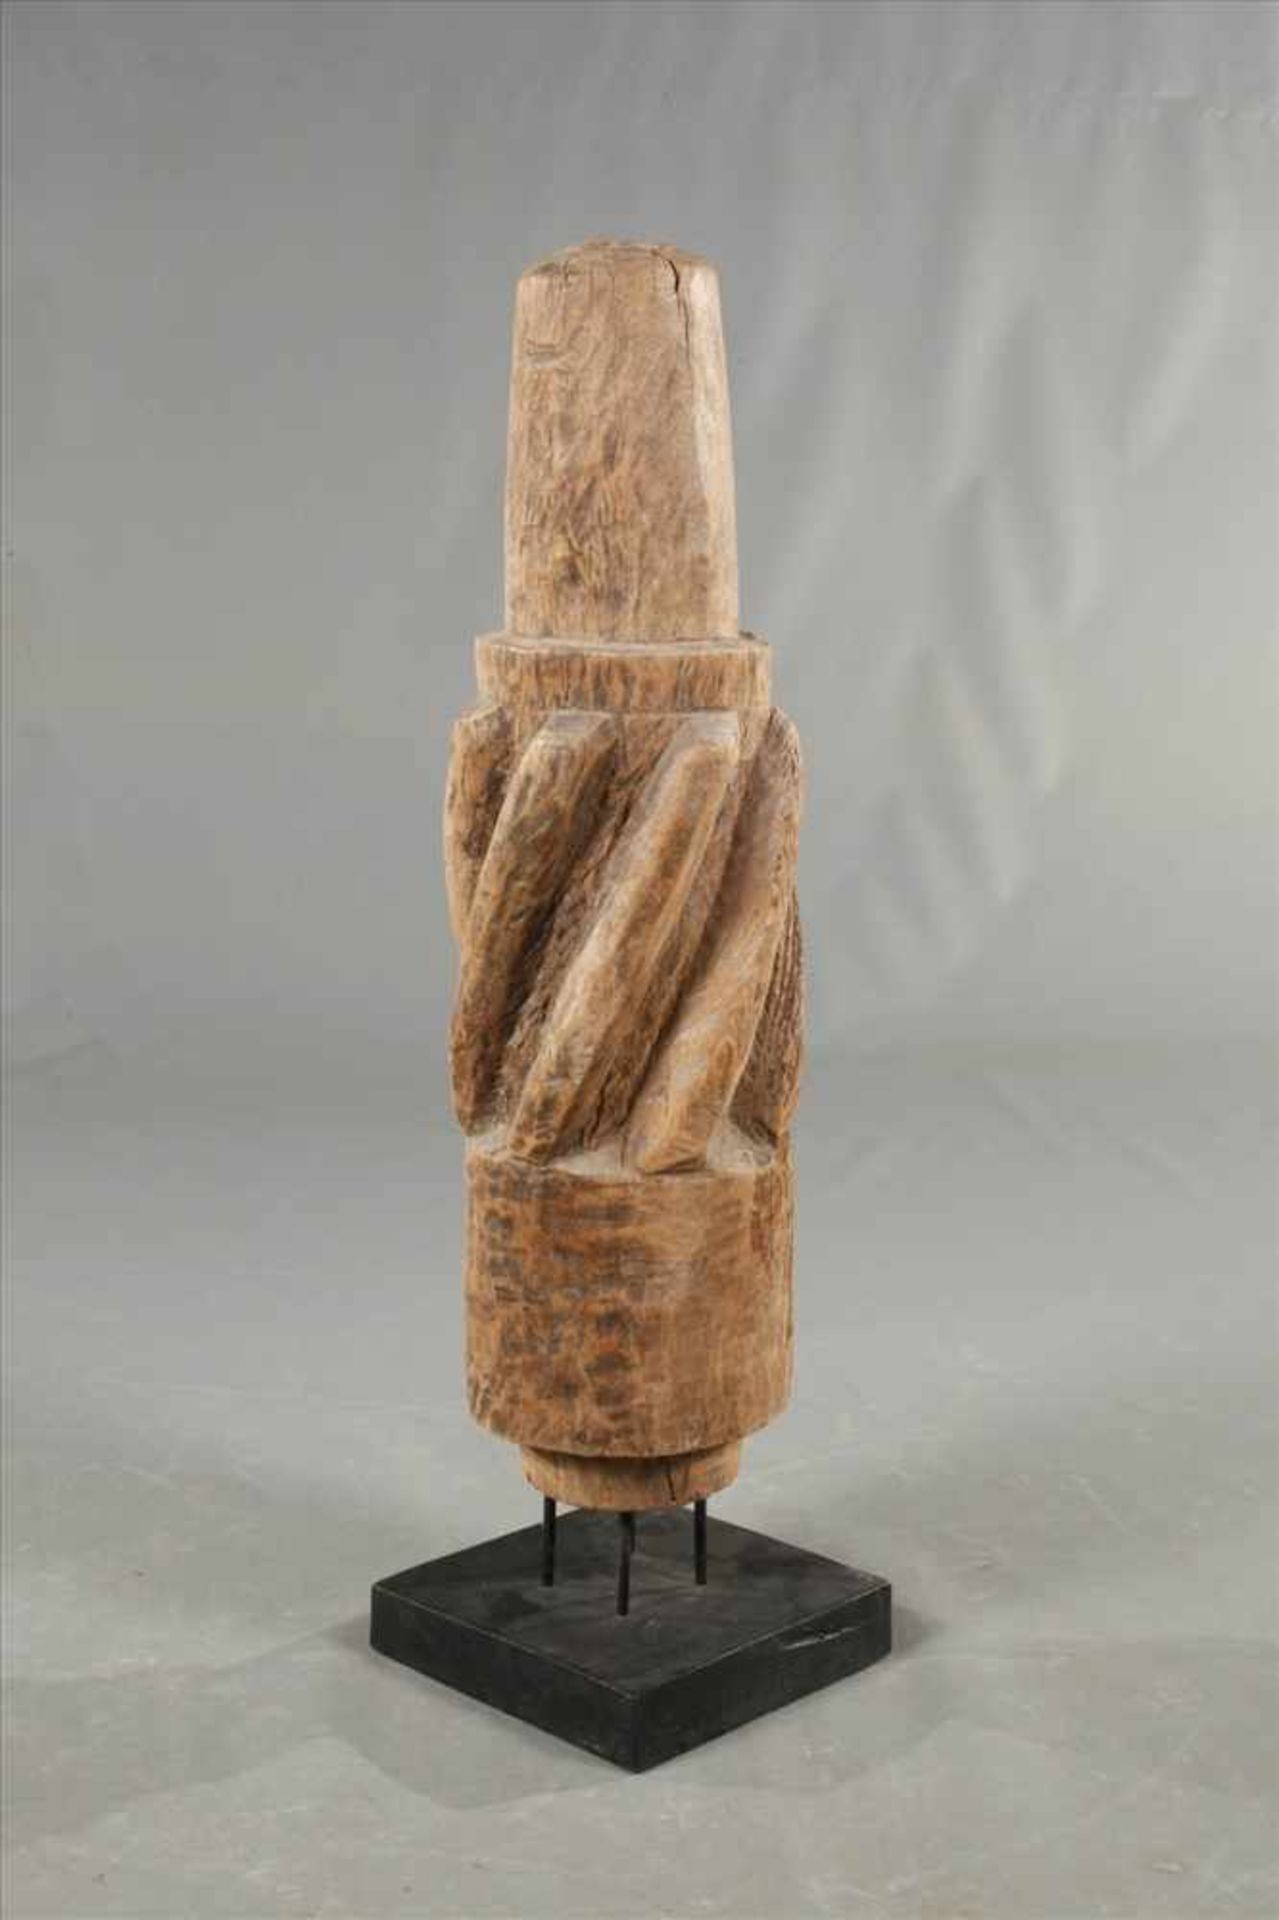 Dekoratives Holzzahnradwohl 18. Jh., mit Schrägverzahnung, auf späterem Eisenständer montiert, - Bild 3 aus 3